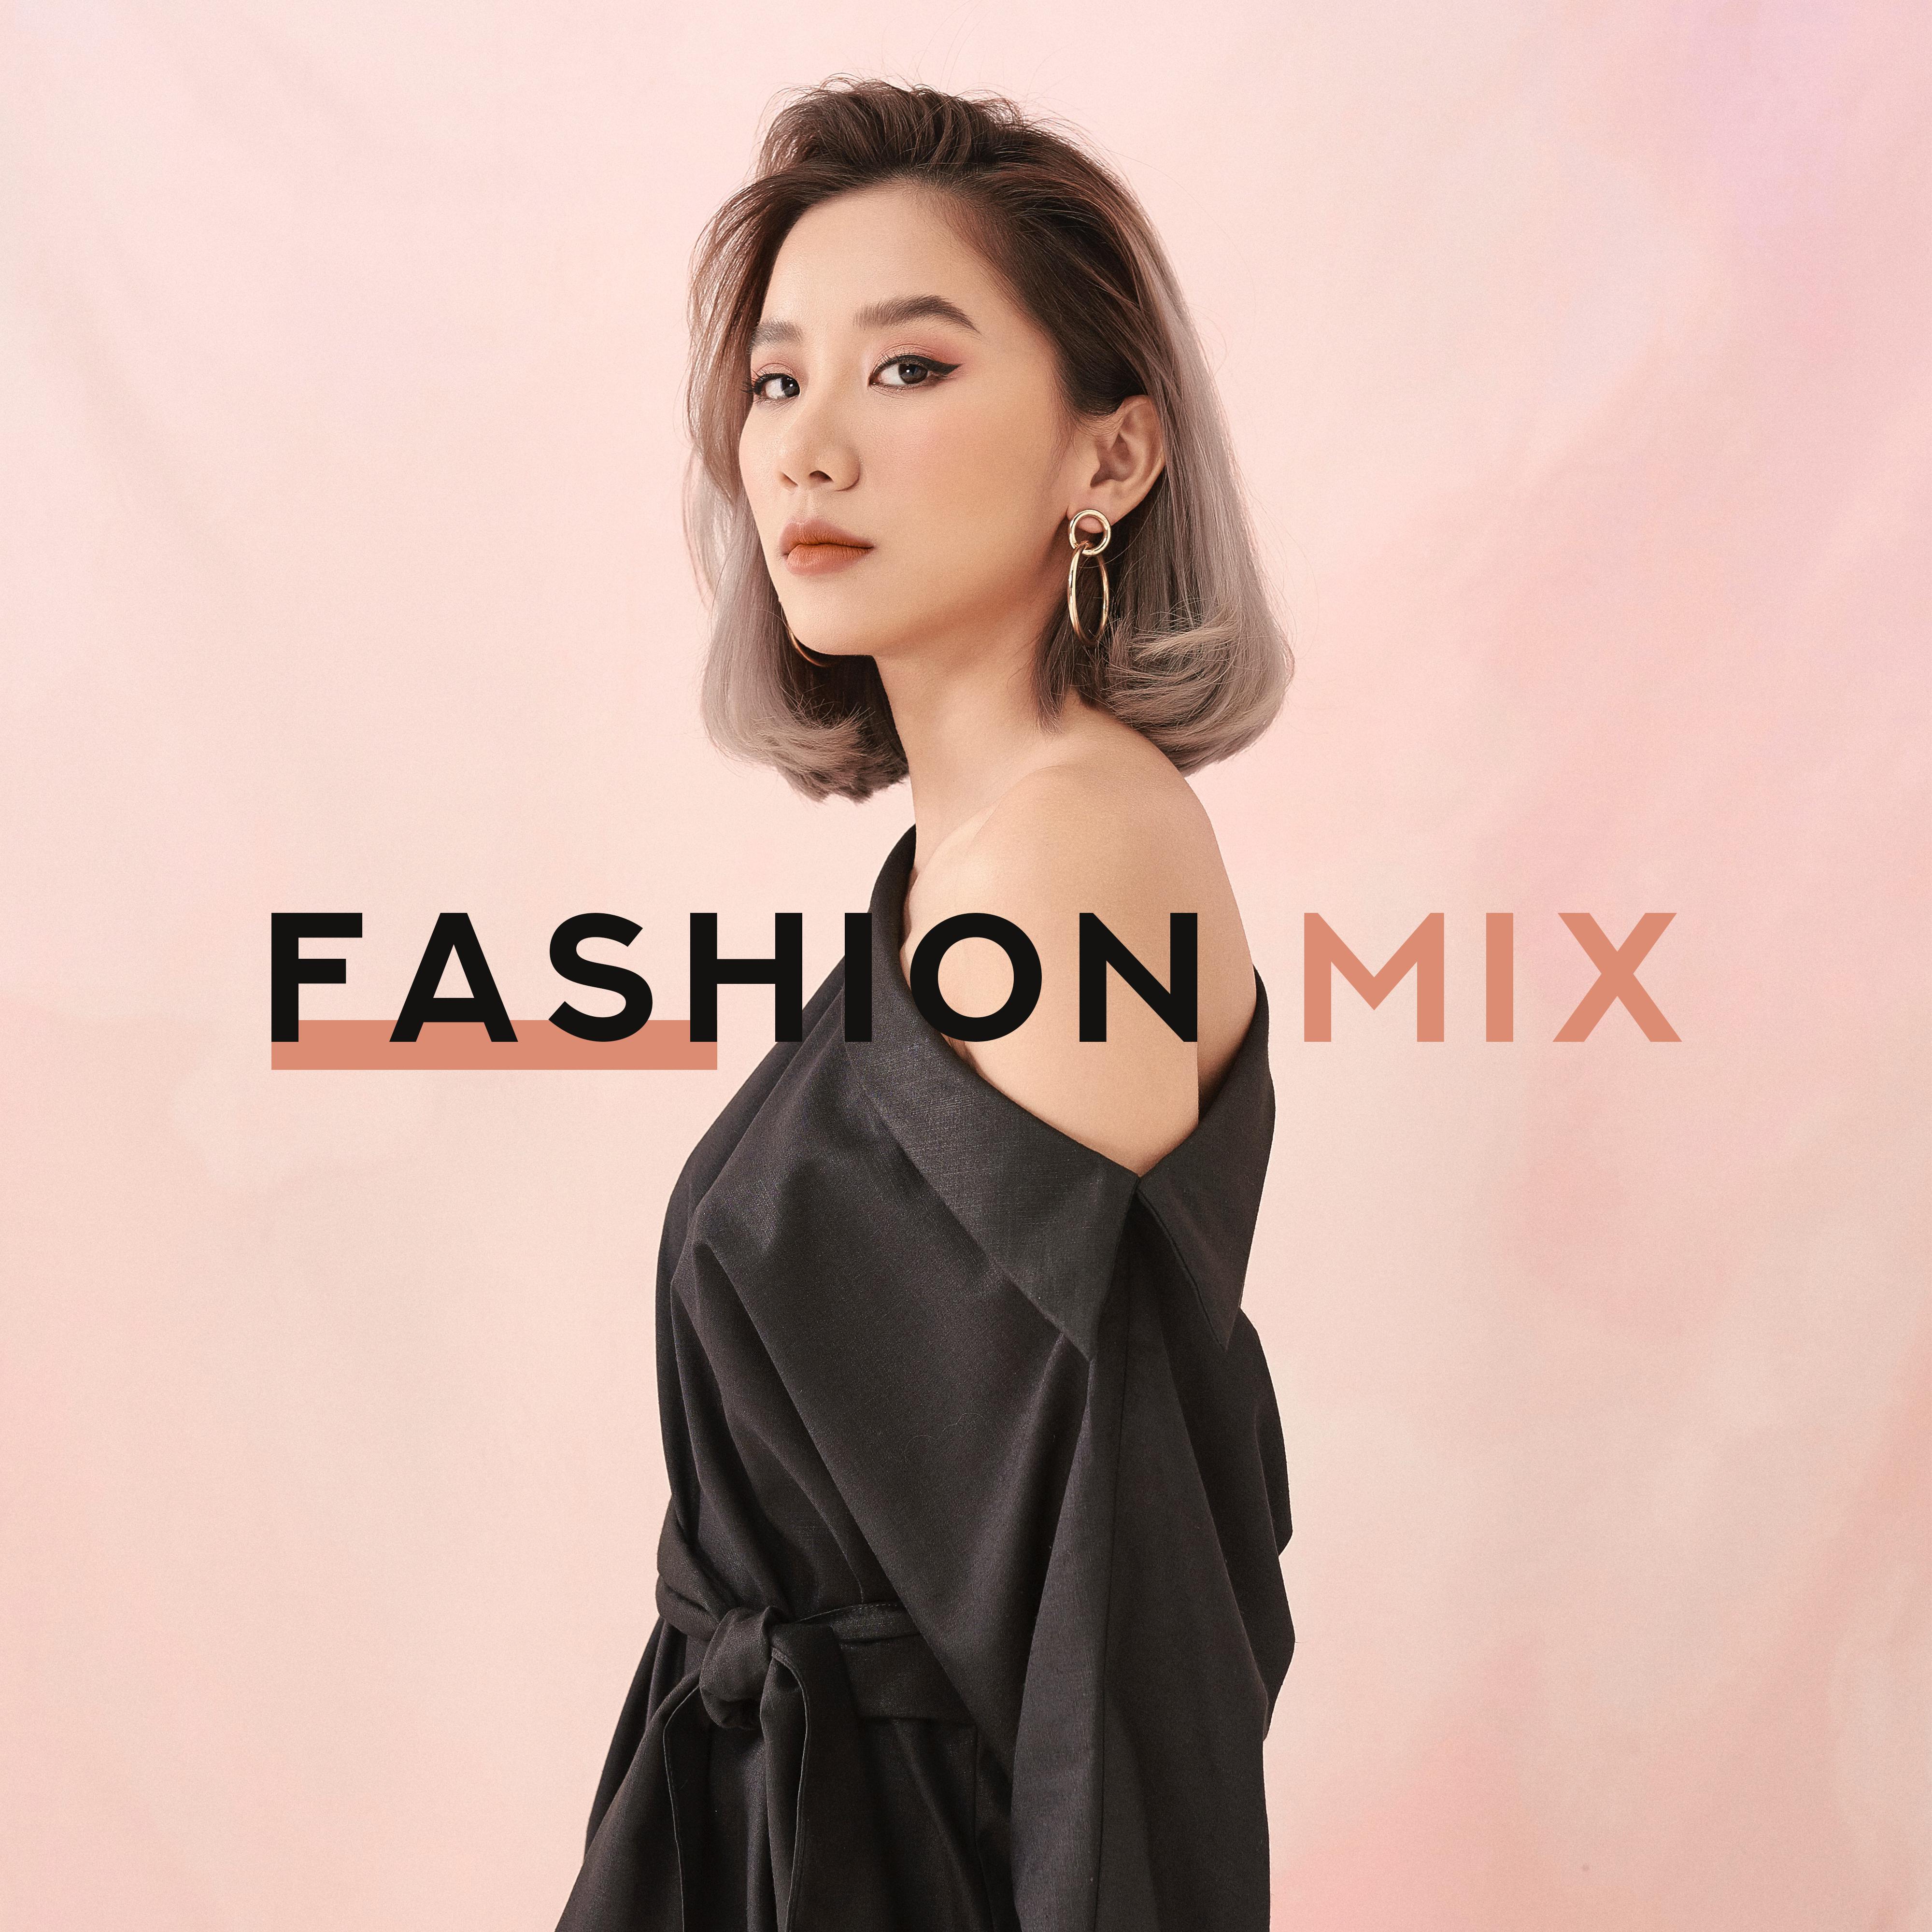 Fashion Mix – Runway Music 2020, Fashion Beats, Catwalk Music 2020